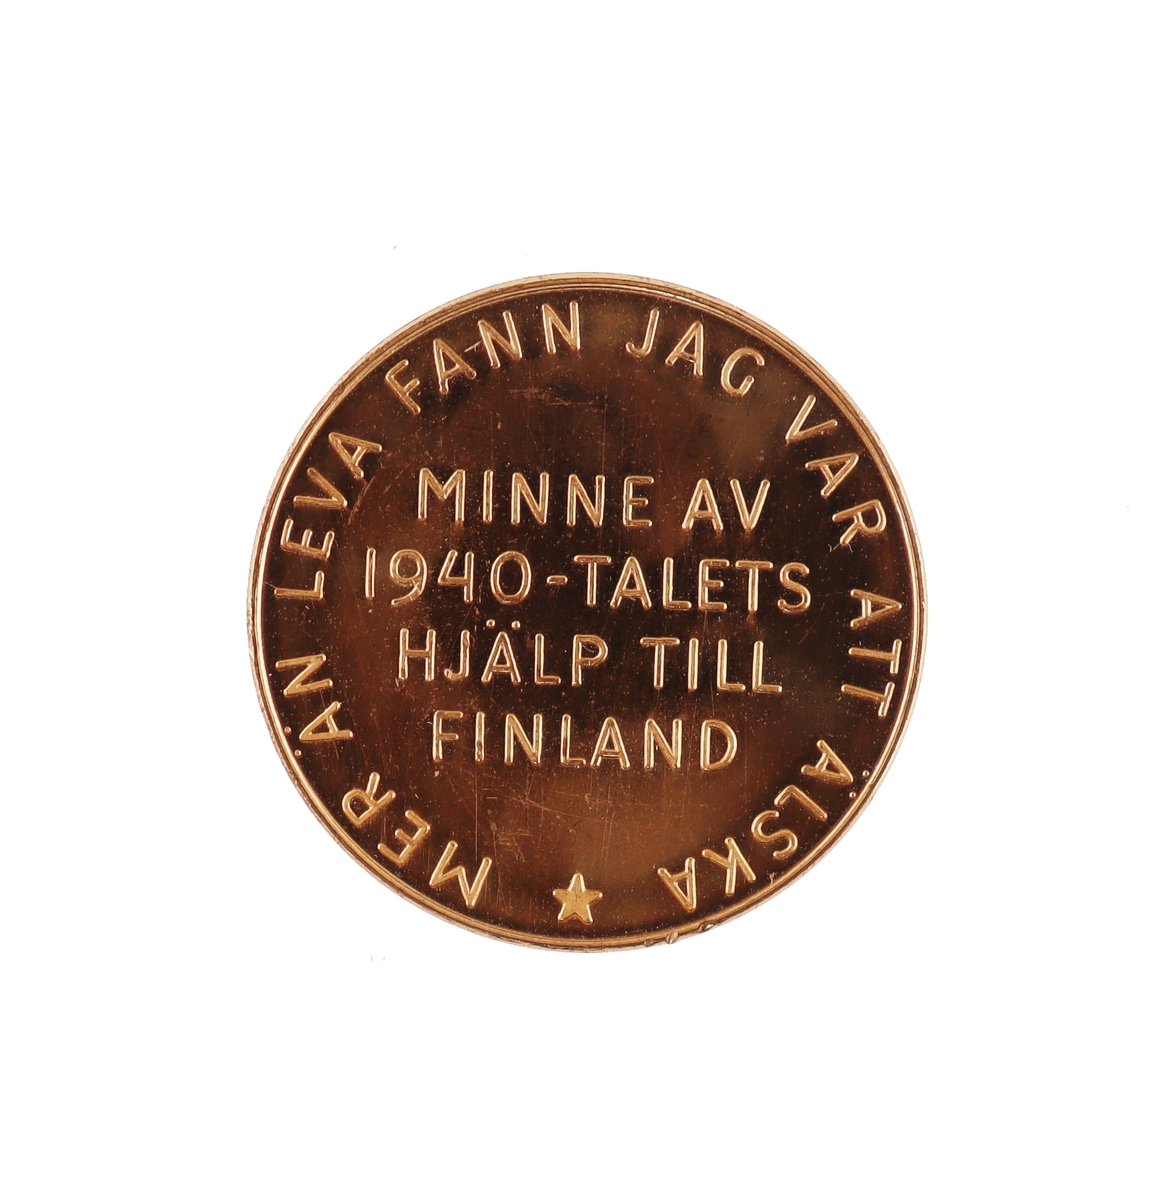 Minnesmynt i koppar. "Minne av 1940-talets hjälp till Finland"